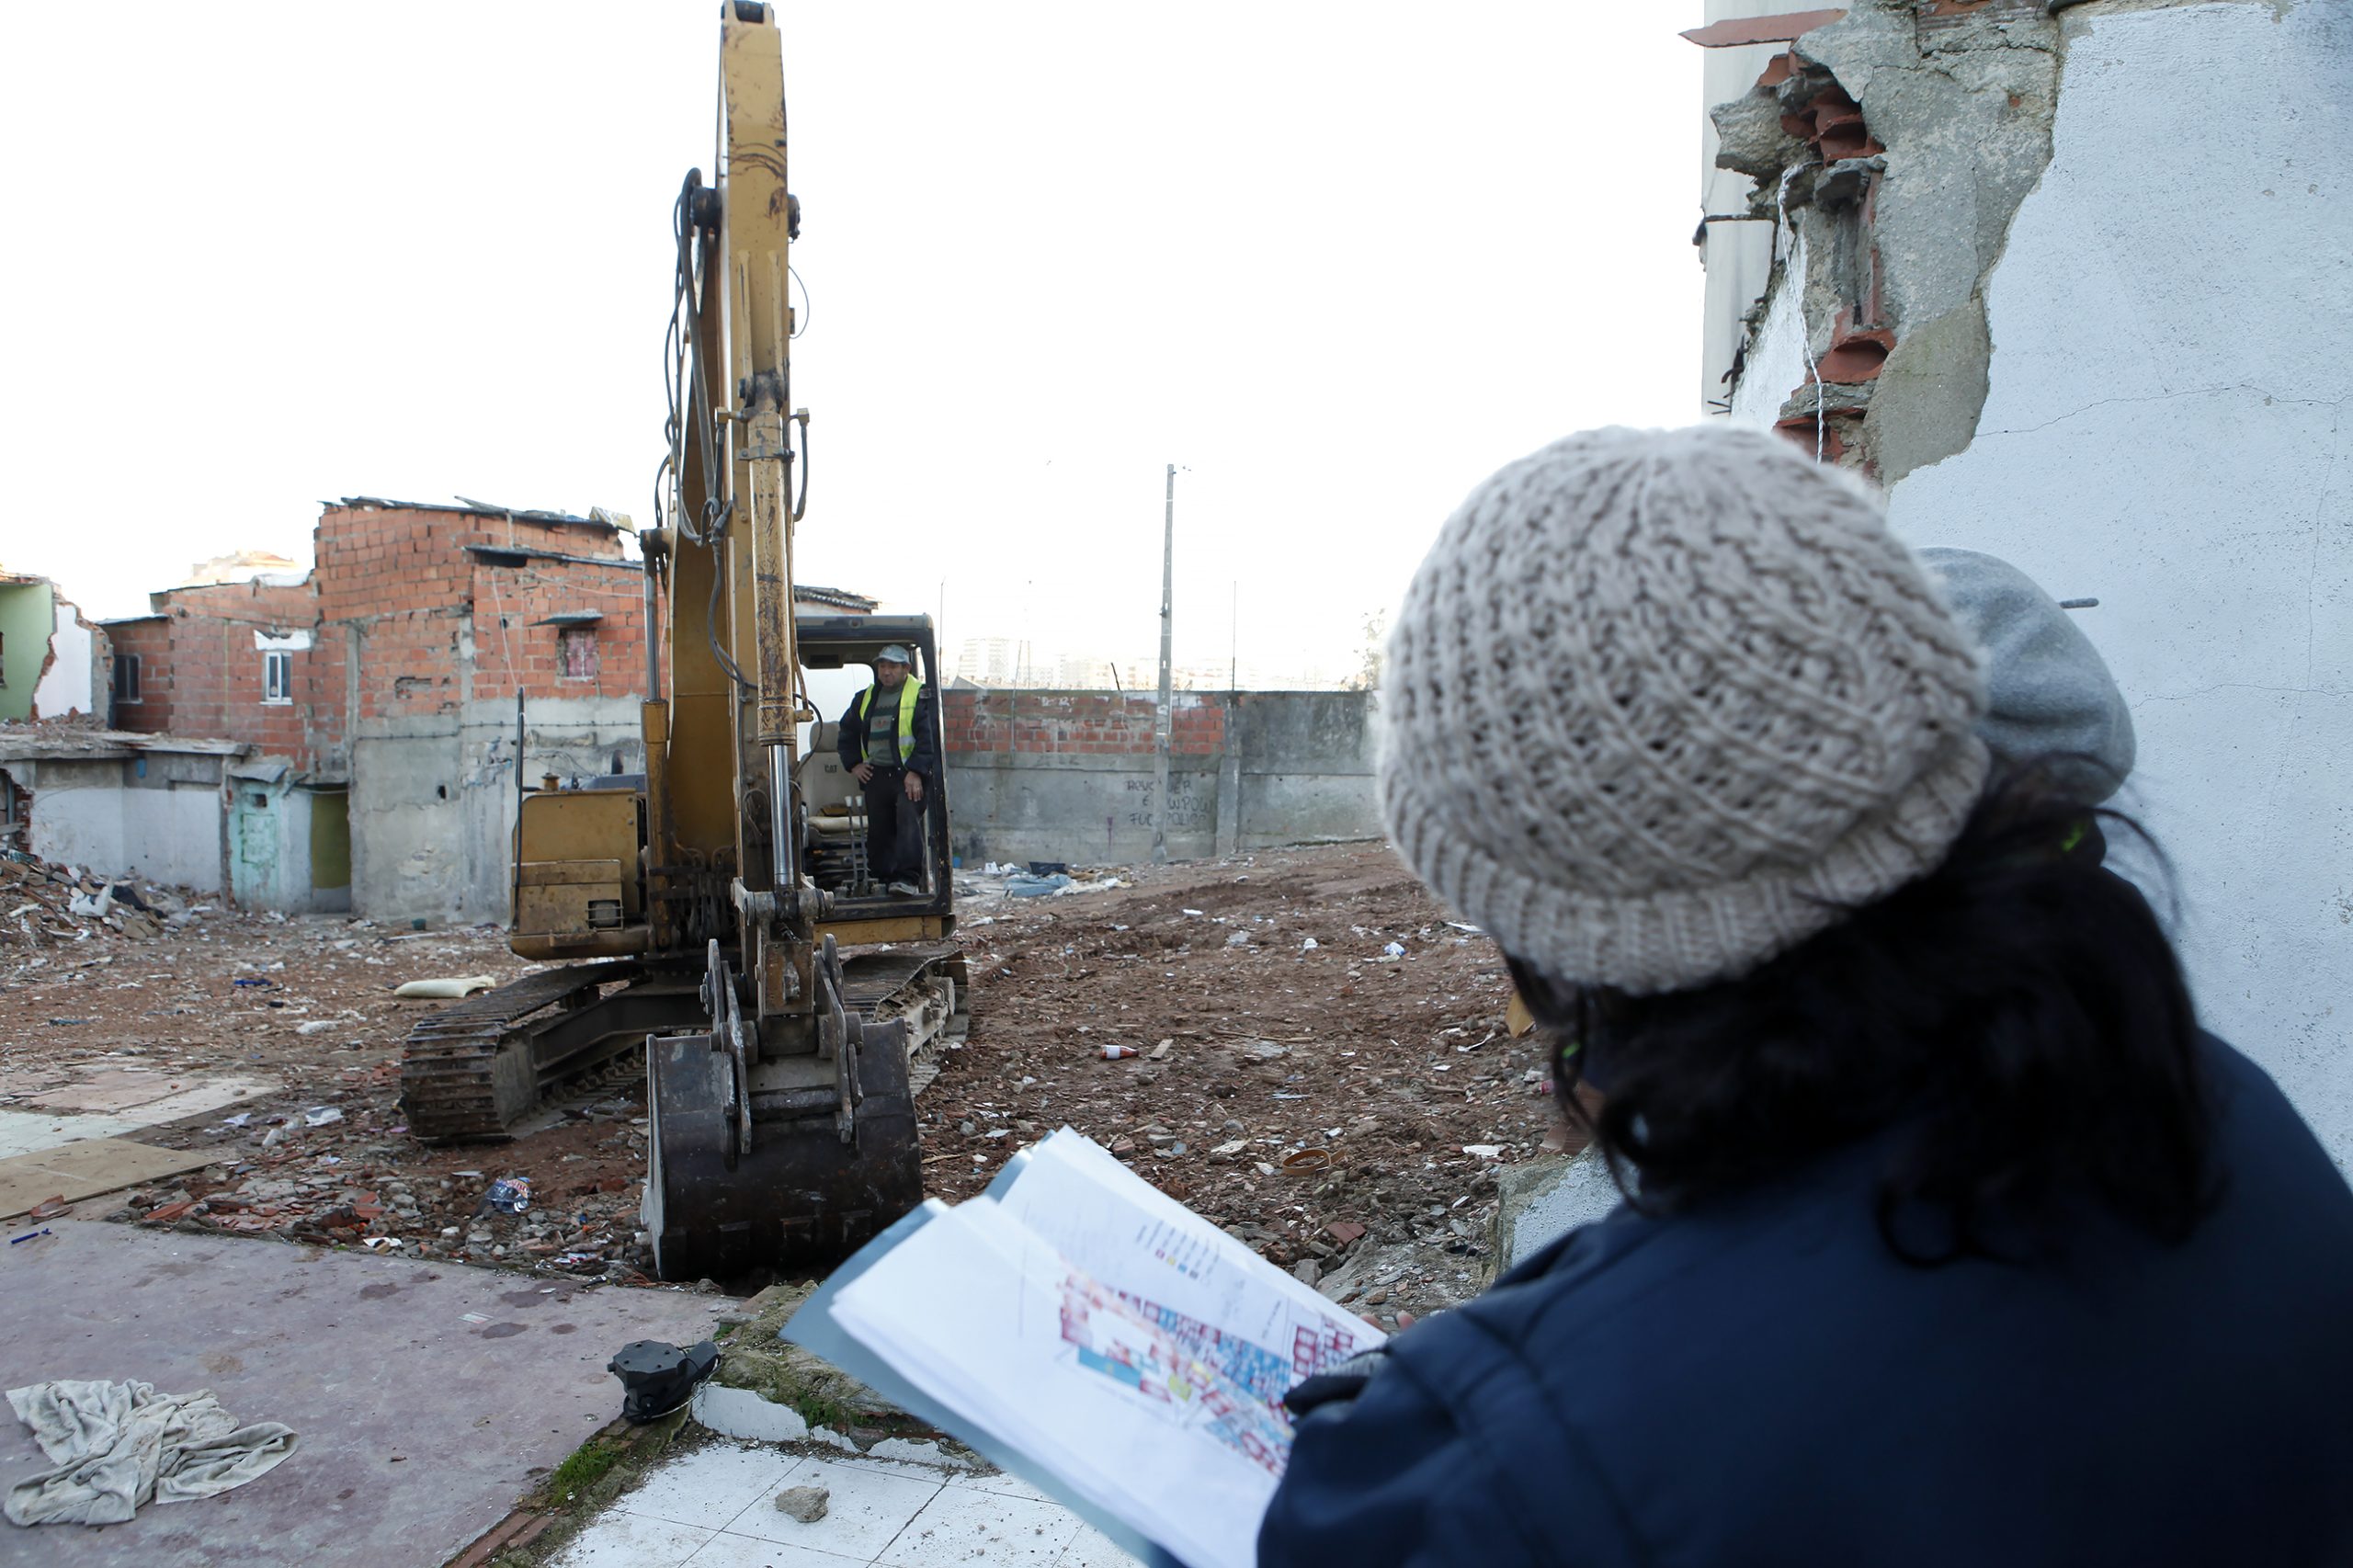 Câmara Municipal da Amadora voltou a avançar com as demolições no bairro 6 de maio